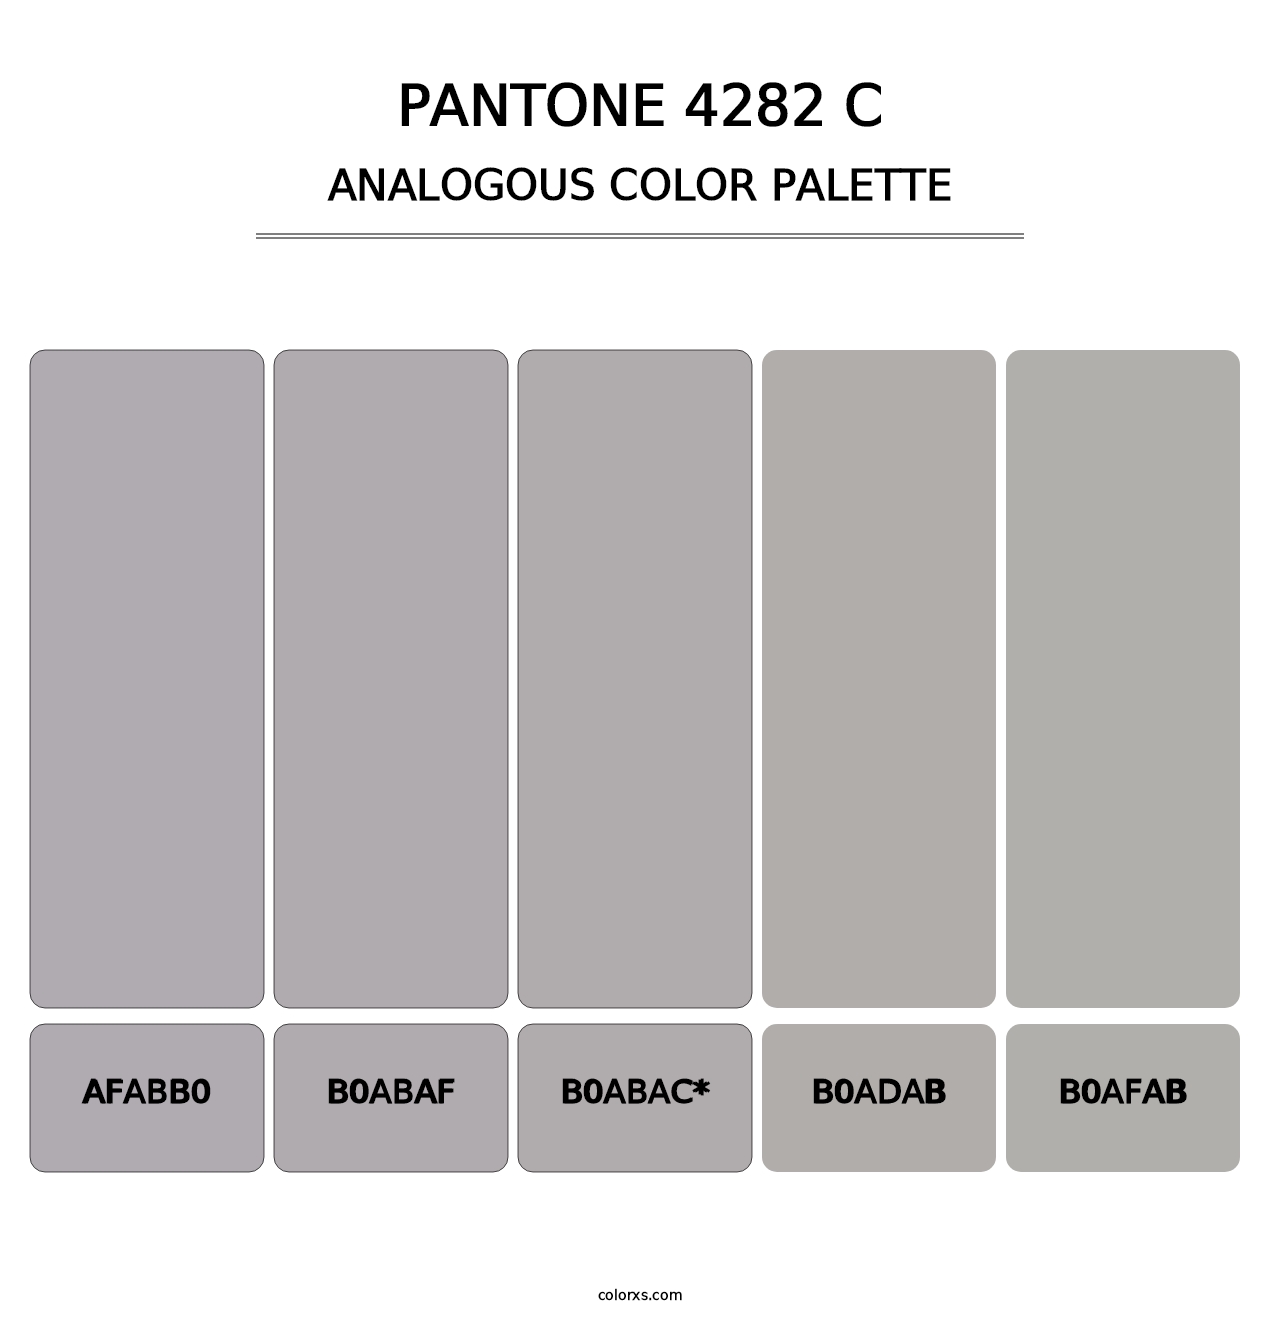 PANTONE 4282 C - Analogous Color Palette